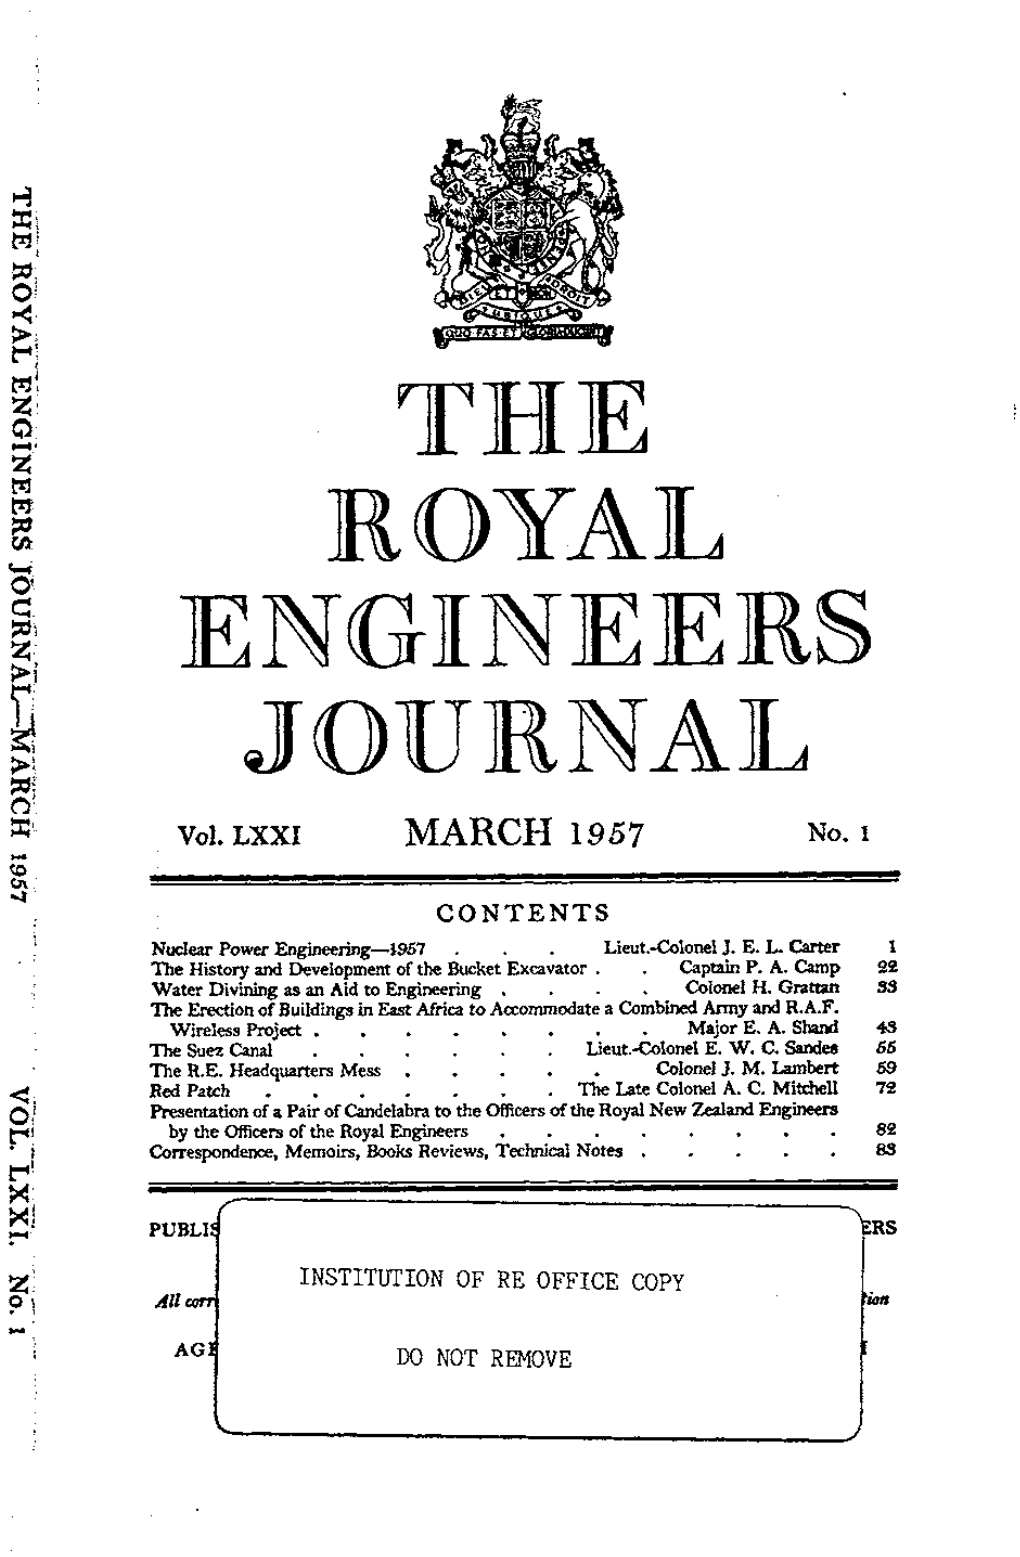 ENGINEERS JOURNAL Vol